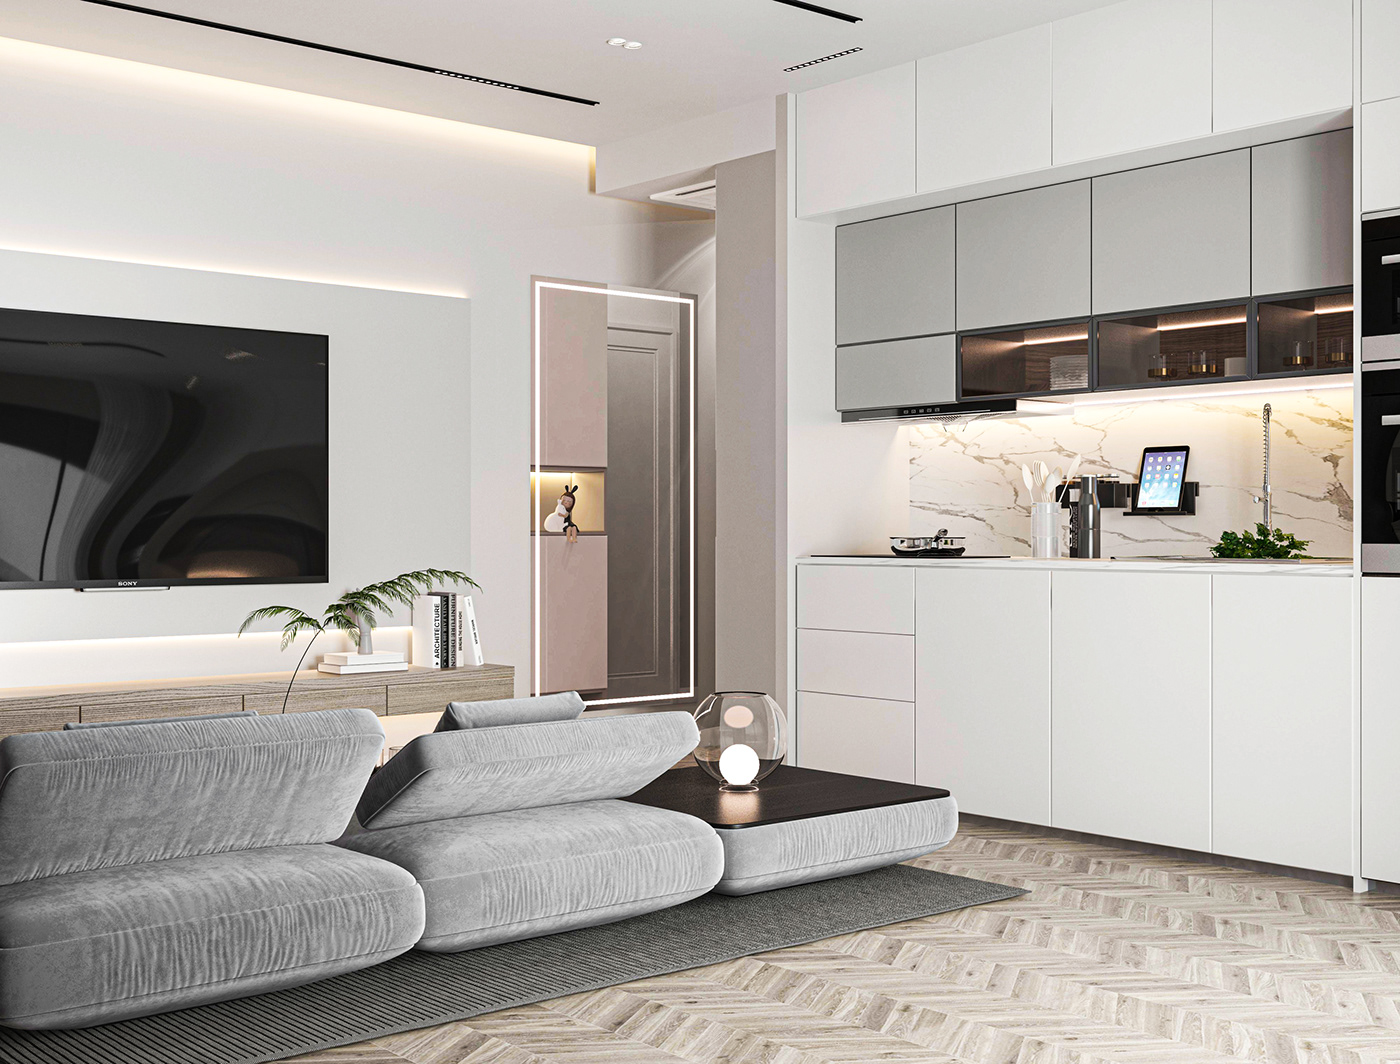 3ds max interior design  visualization modern Render